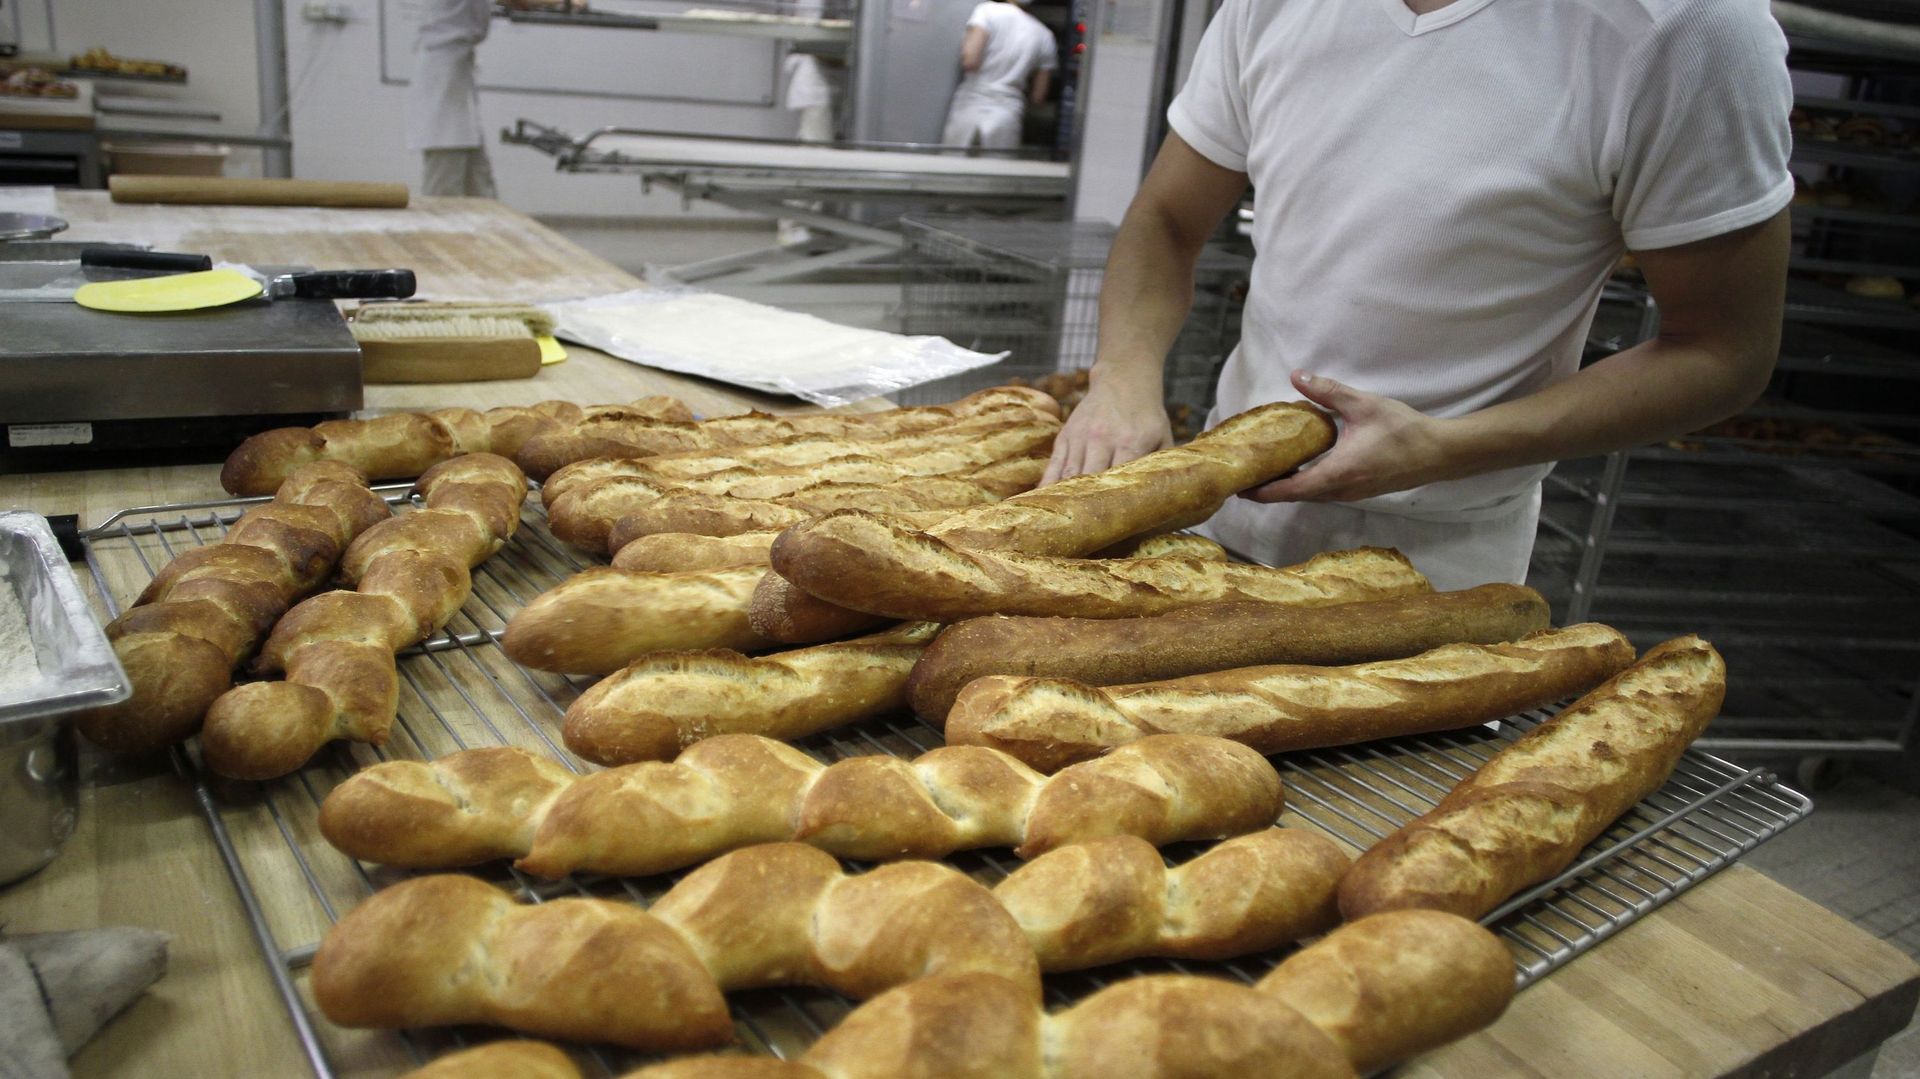 Un propriétaire d’une boulangerie cache 8000 kg de semoule dans sa maison (Photos)